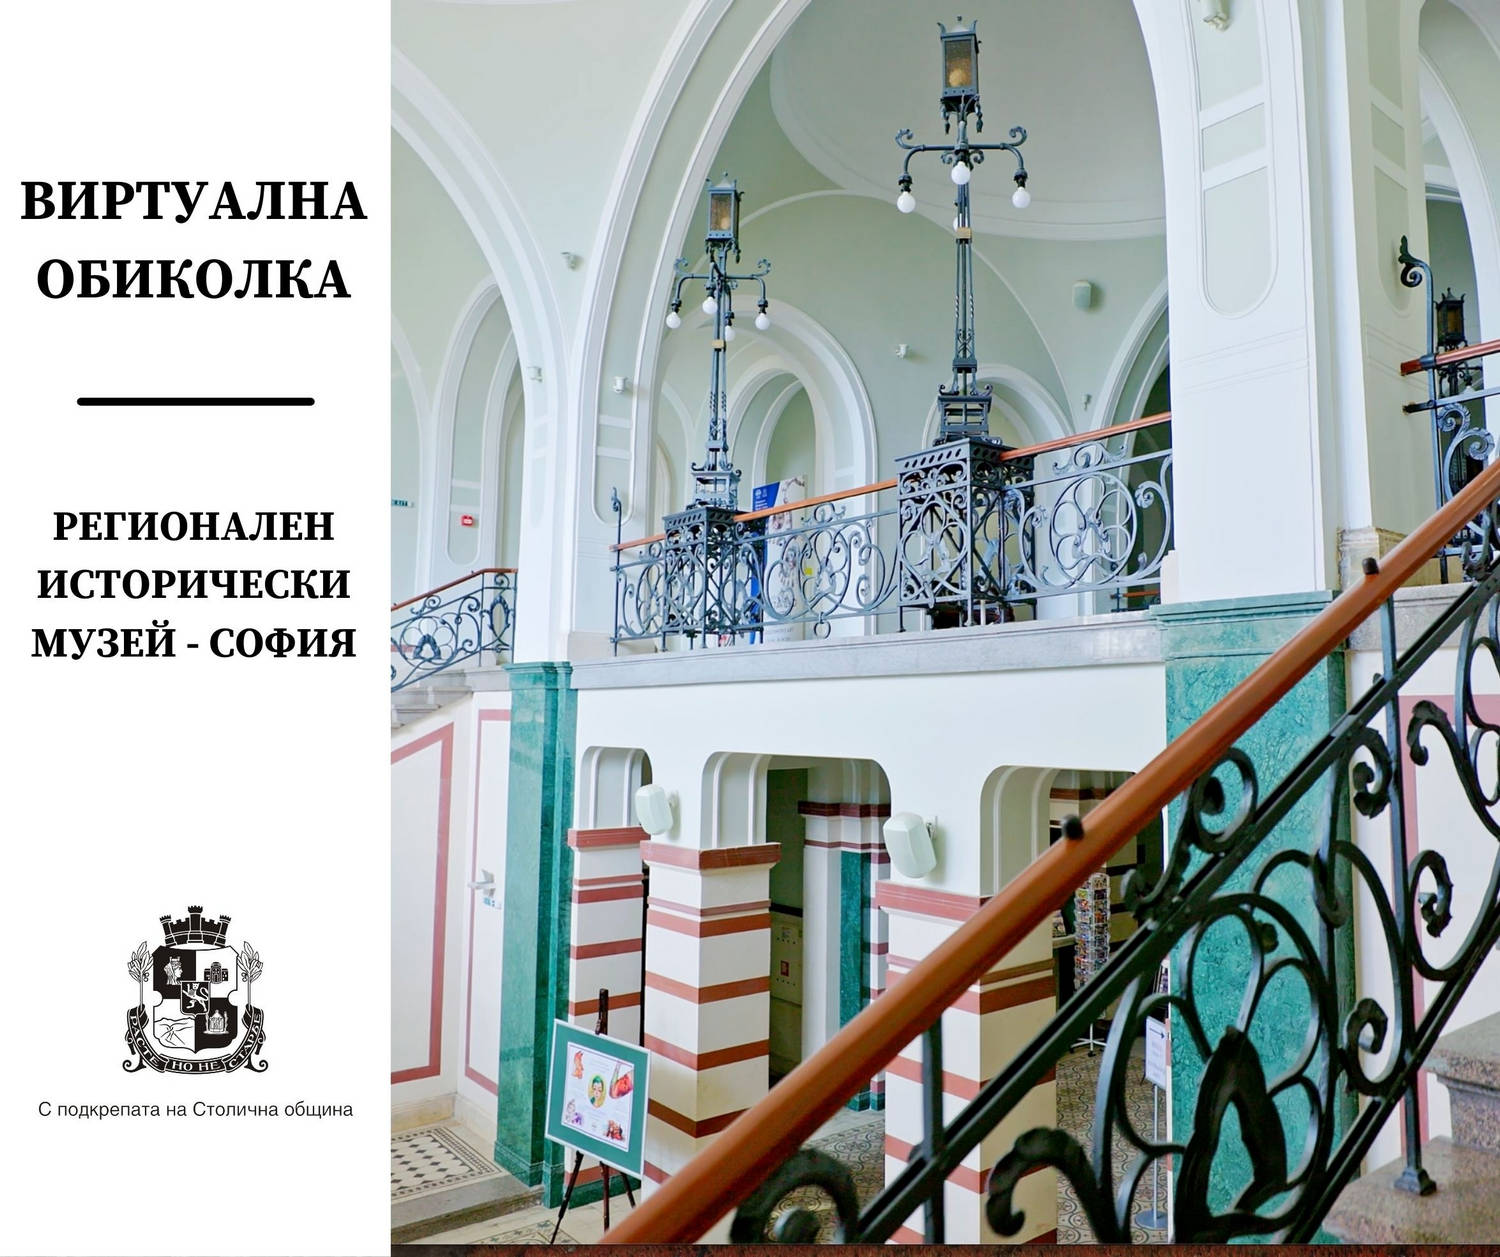 Регионалният исторически музей на София предлага нова възможност - виртуална